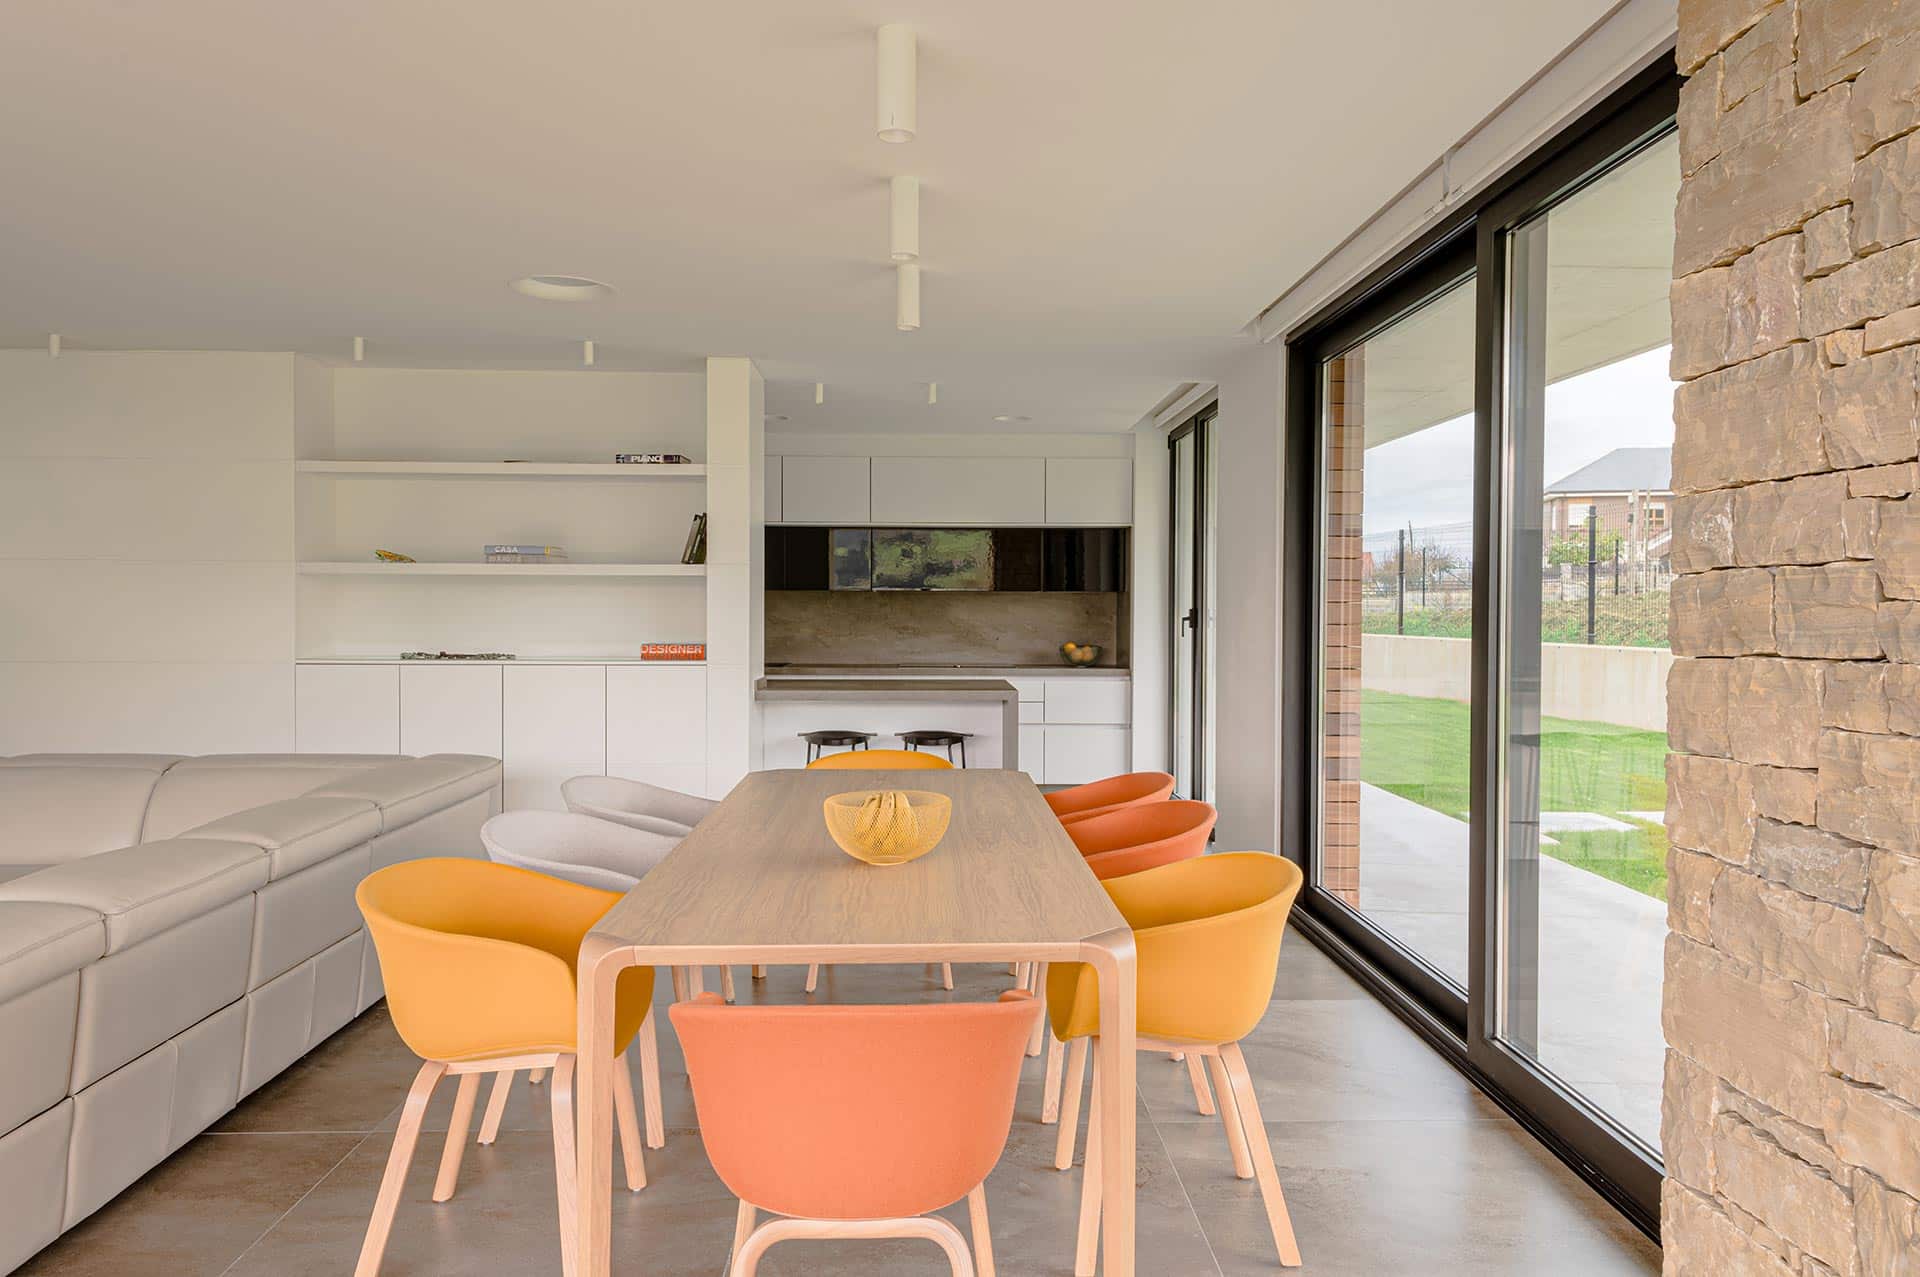 Comedor y cocina en casa moderna diseñada por Moah Arquitectos en Pontejos